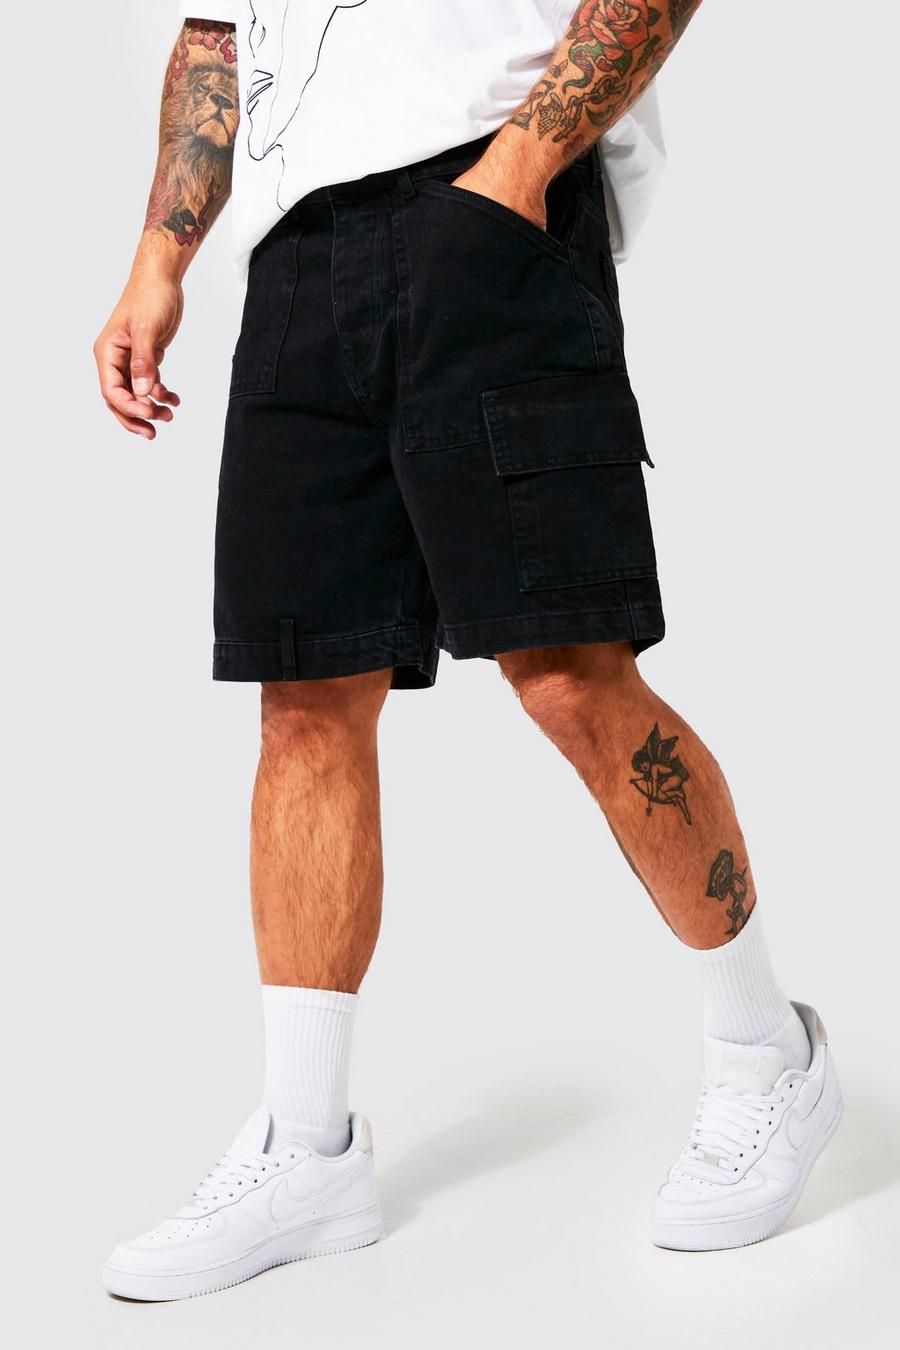 Pantalón corto vaquero holgado con panel de carpintero, Washed black